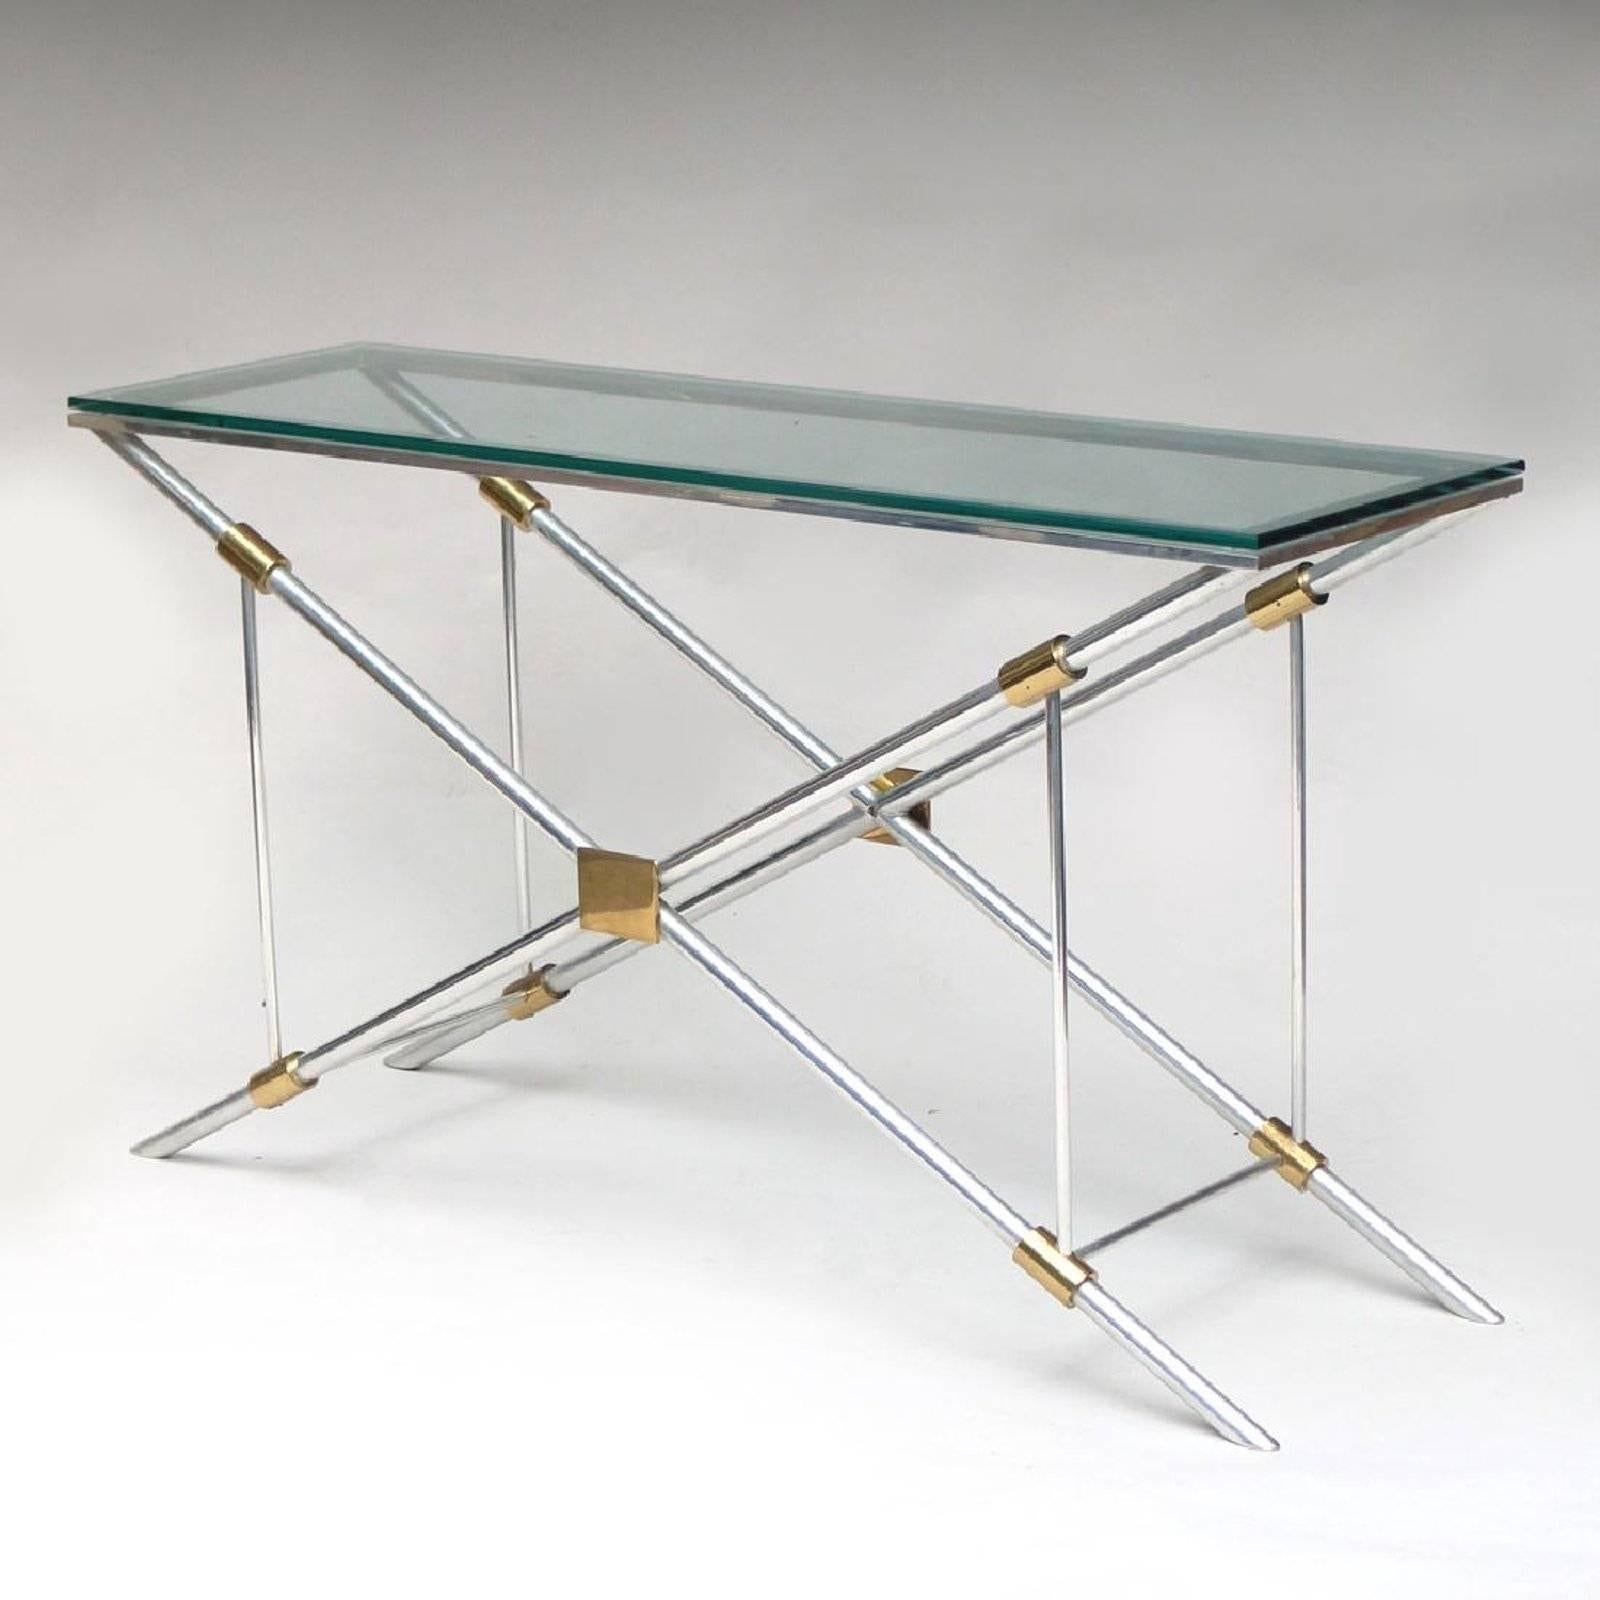 Une table console de John Vesey (1924-1992) pour John Vesey Inc. Un modèle rare du designer qui a réinventé les classiques pour la vie moderne.
Construit en aluminium poli et accents en laiton, avec plateau en verre.